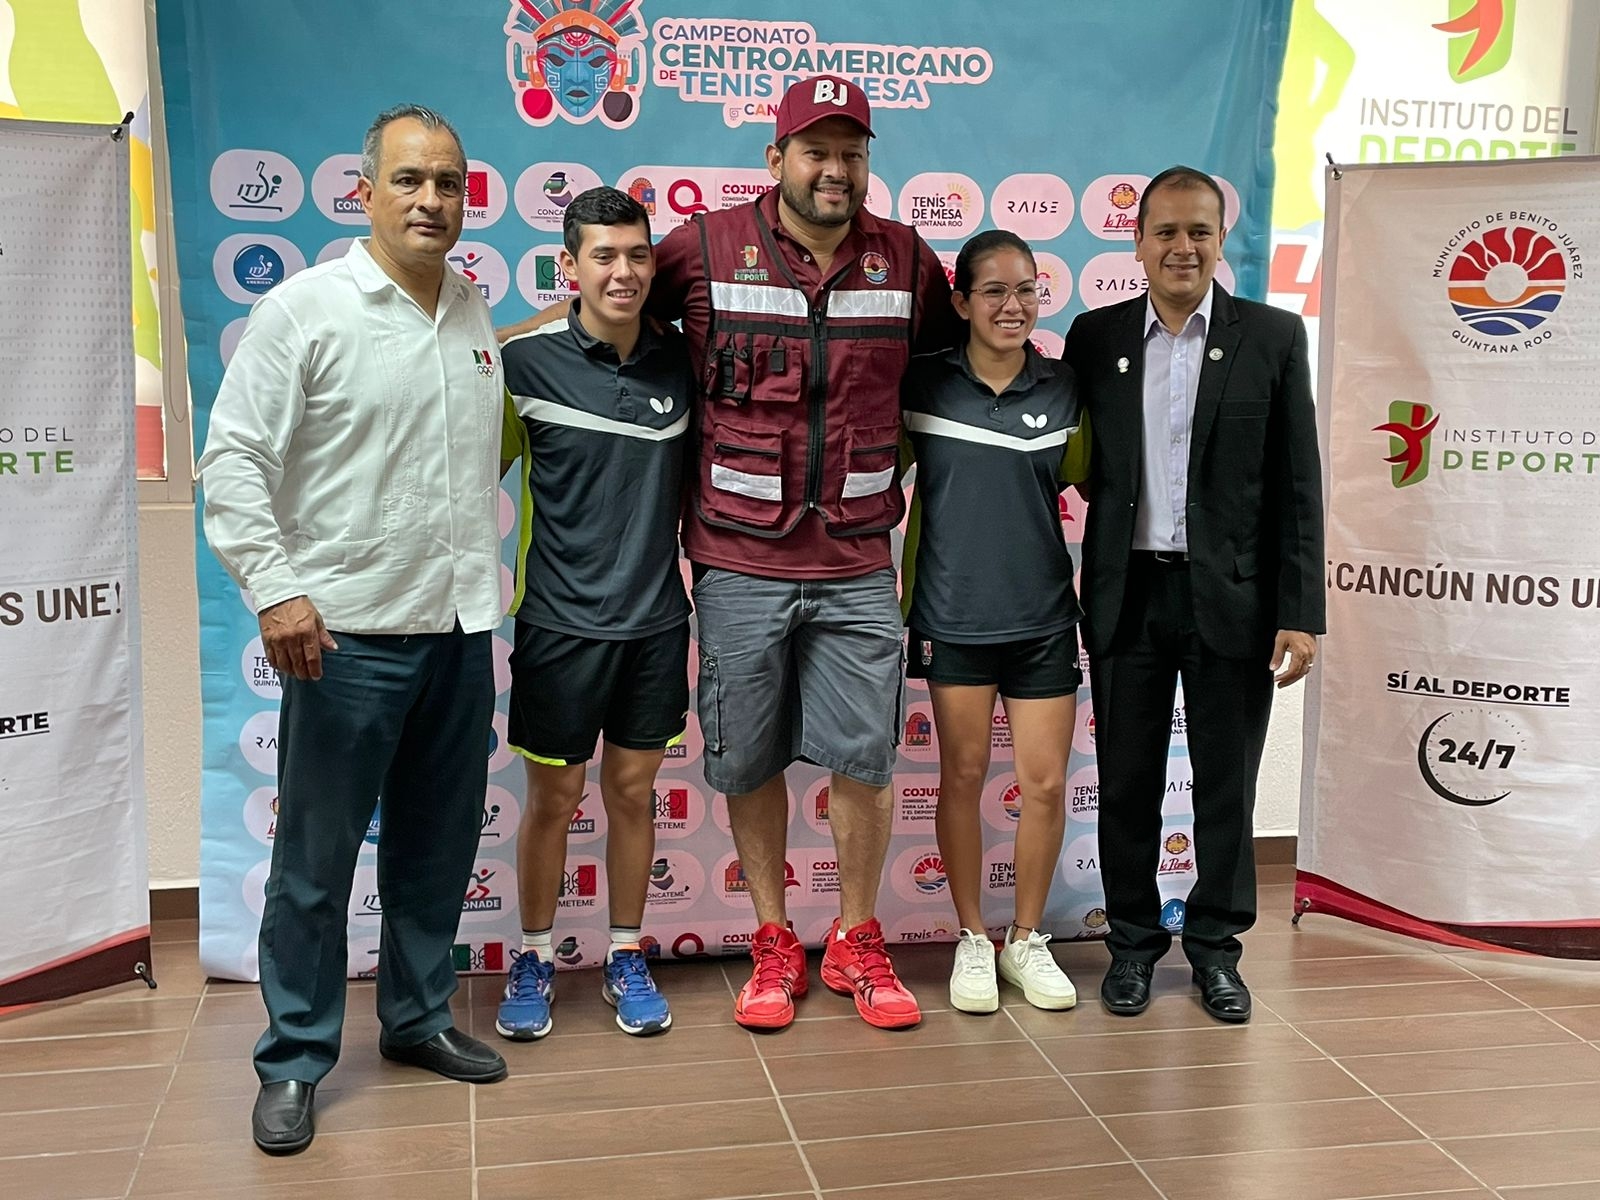 Todo listo para el Campeonato Centroamericano Mayor de Tenis de Mesa en Cancún